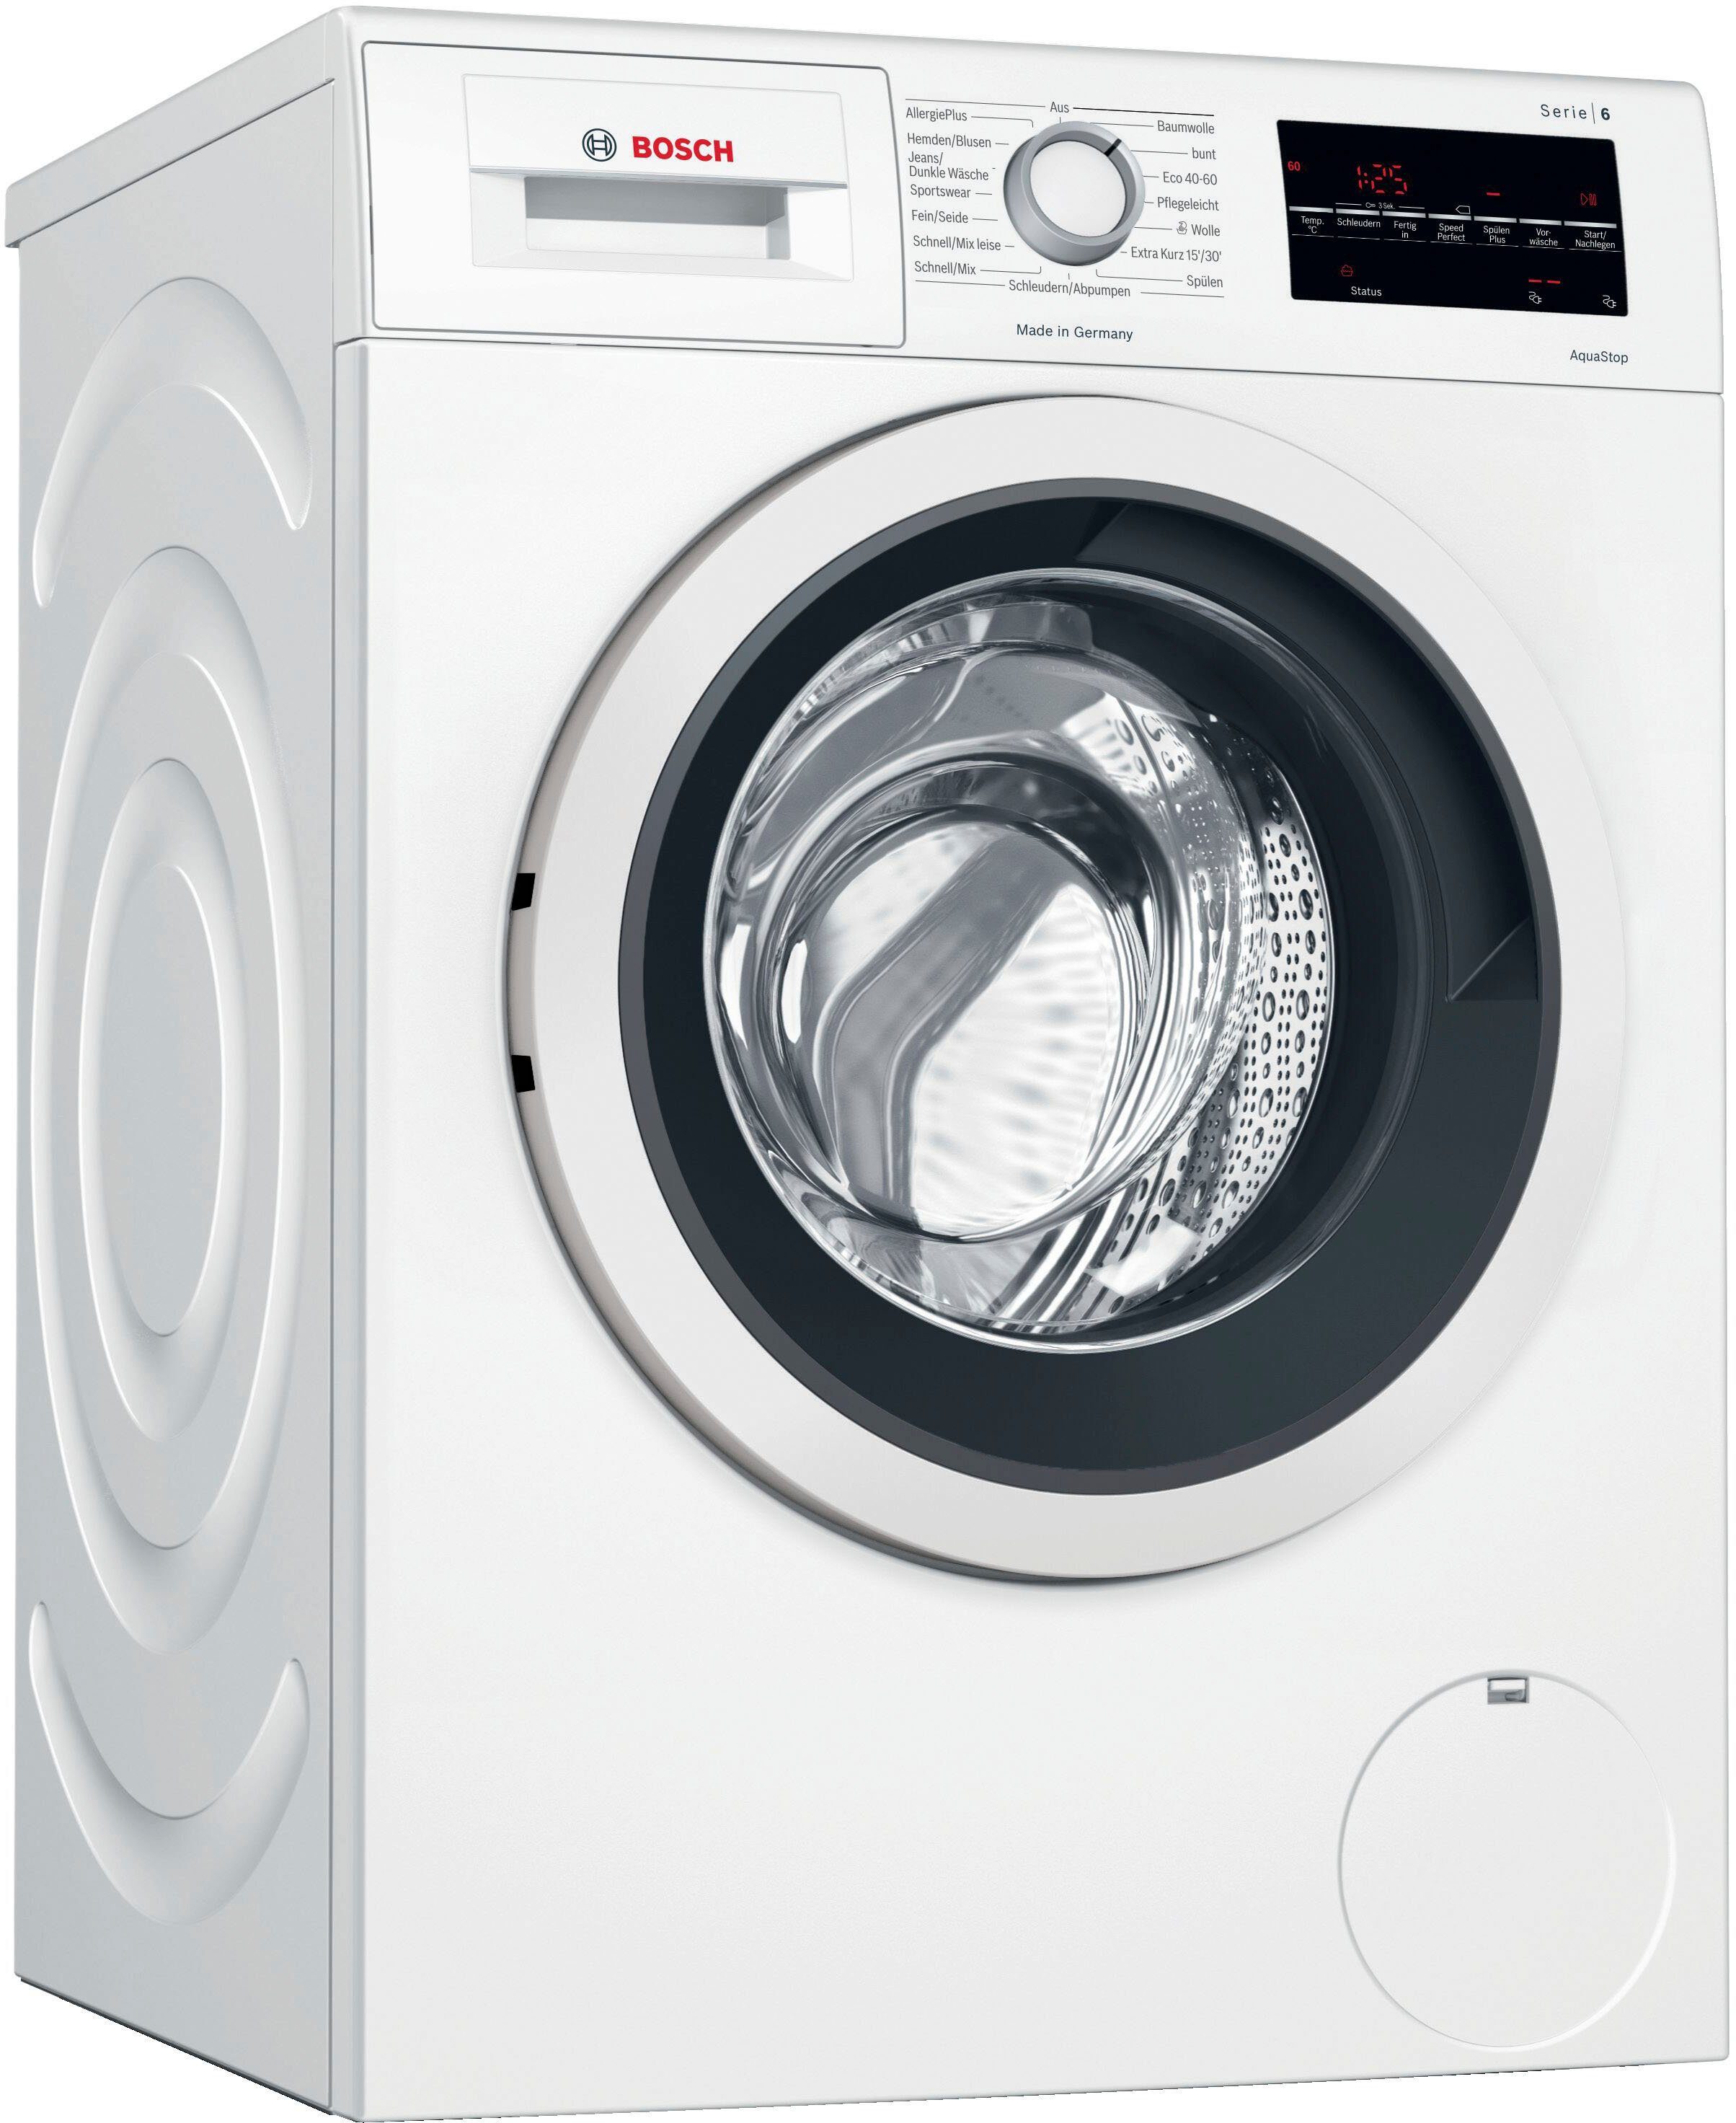 BOSCH Waschmaschine Serie 6 WAG28400, U/min 8 kg, 1400